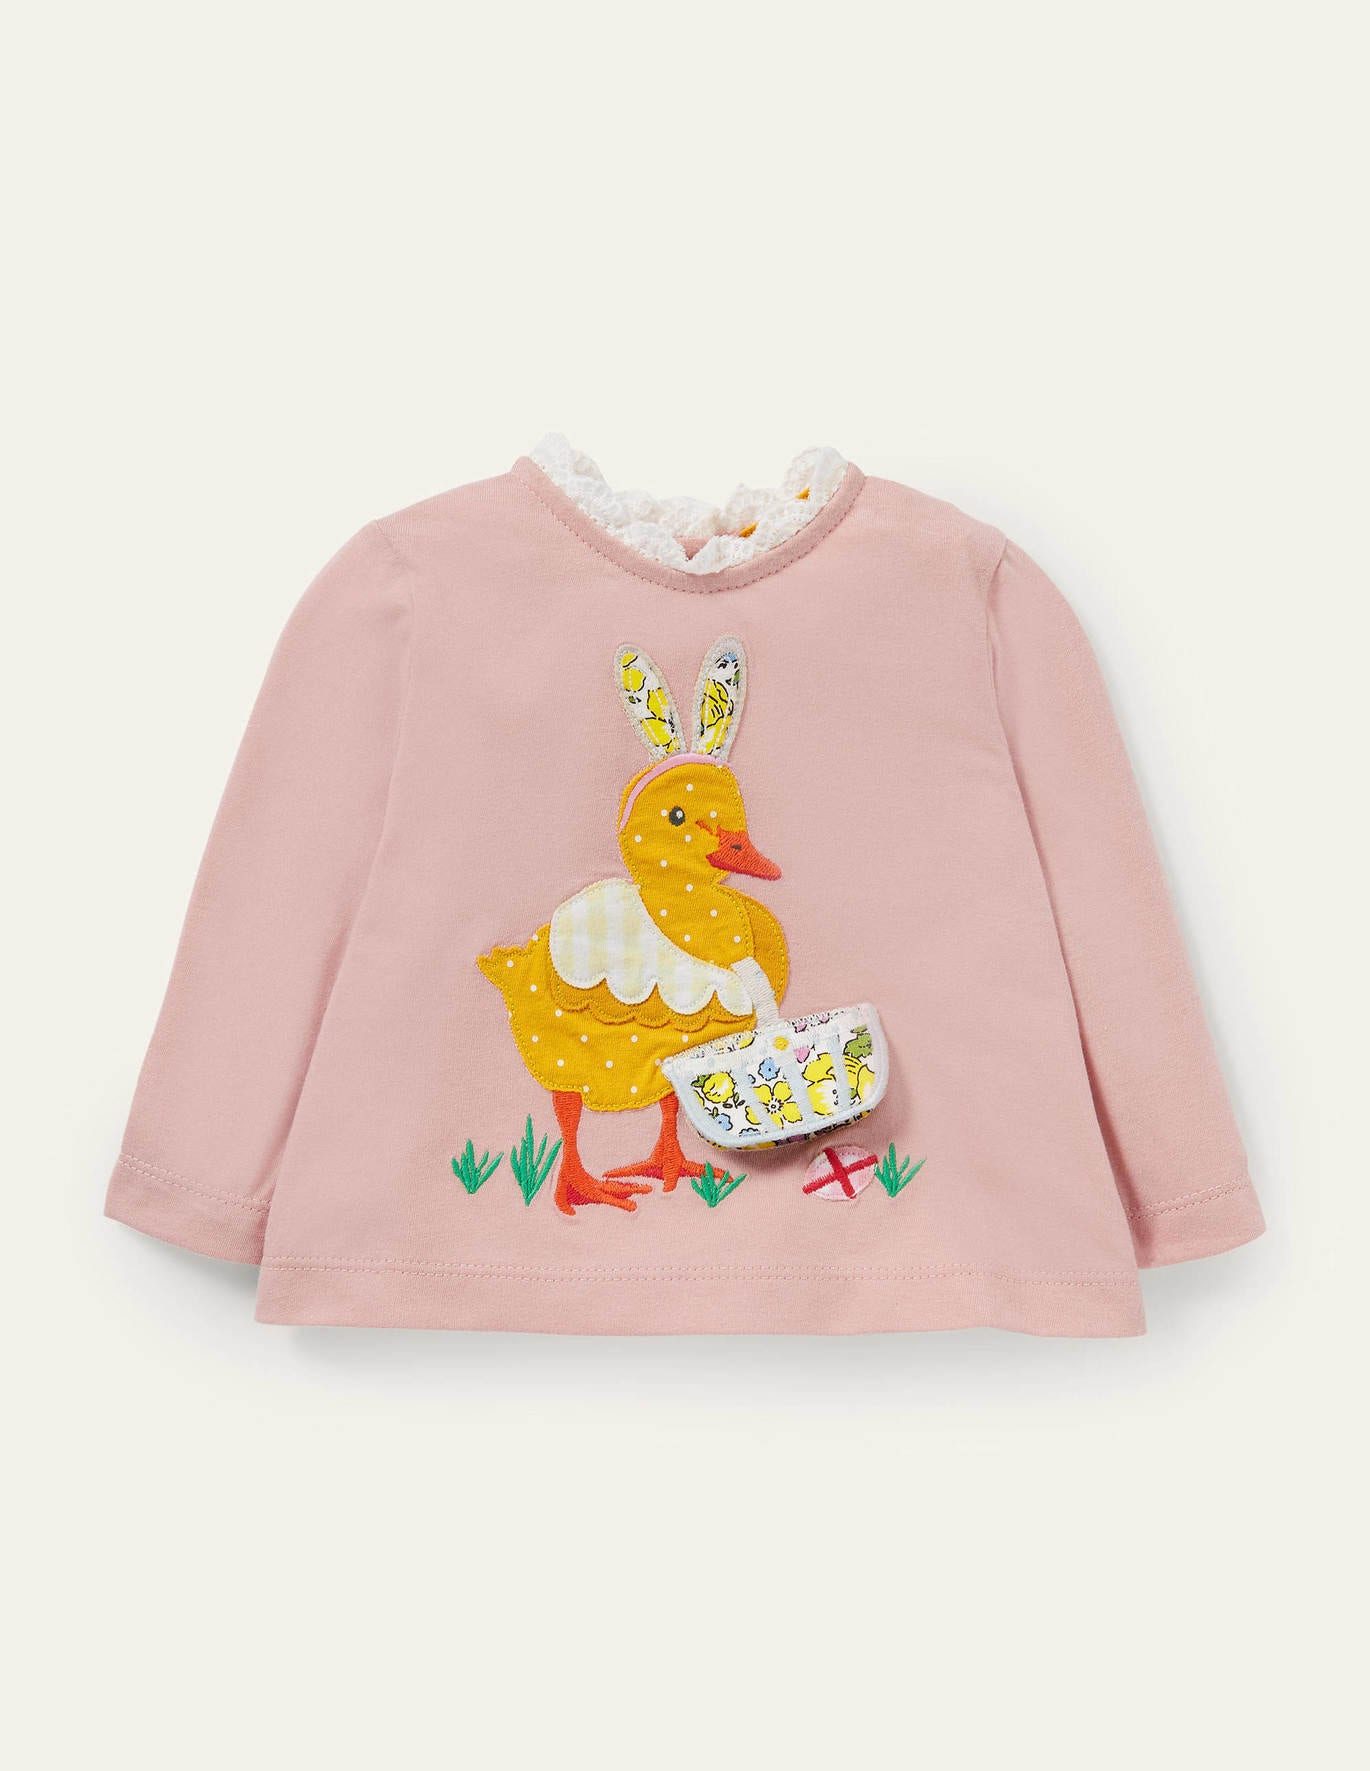 Boden Lift-the-flap T-shirt - Pink Duck